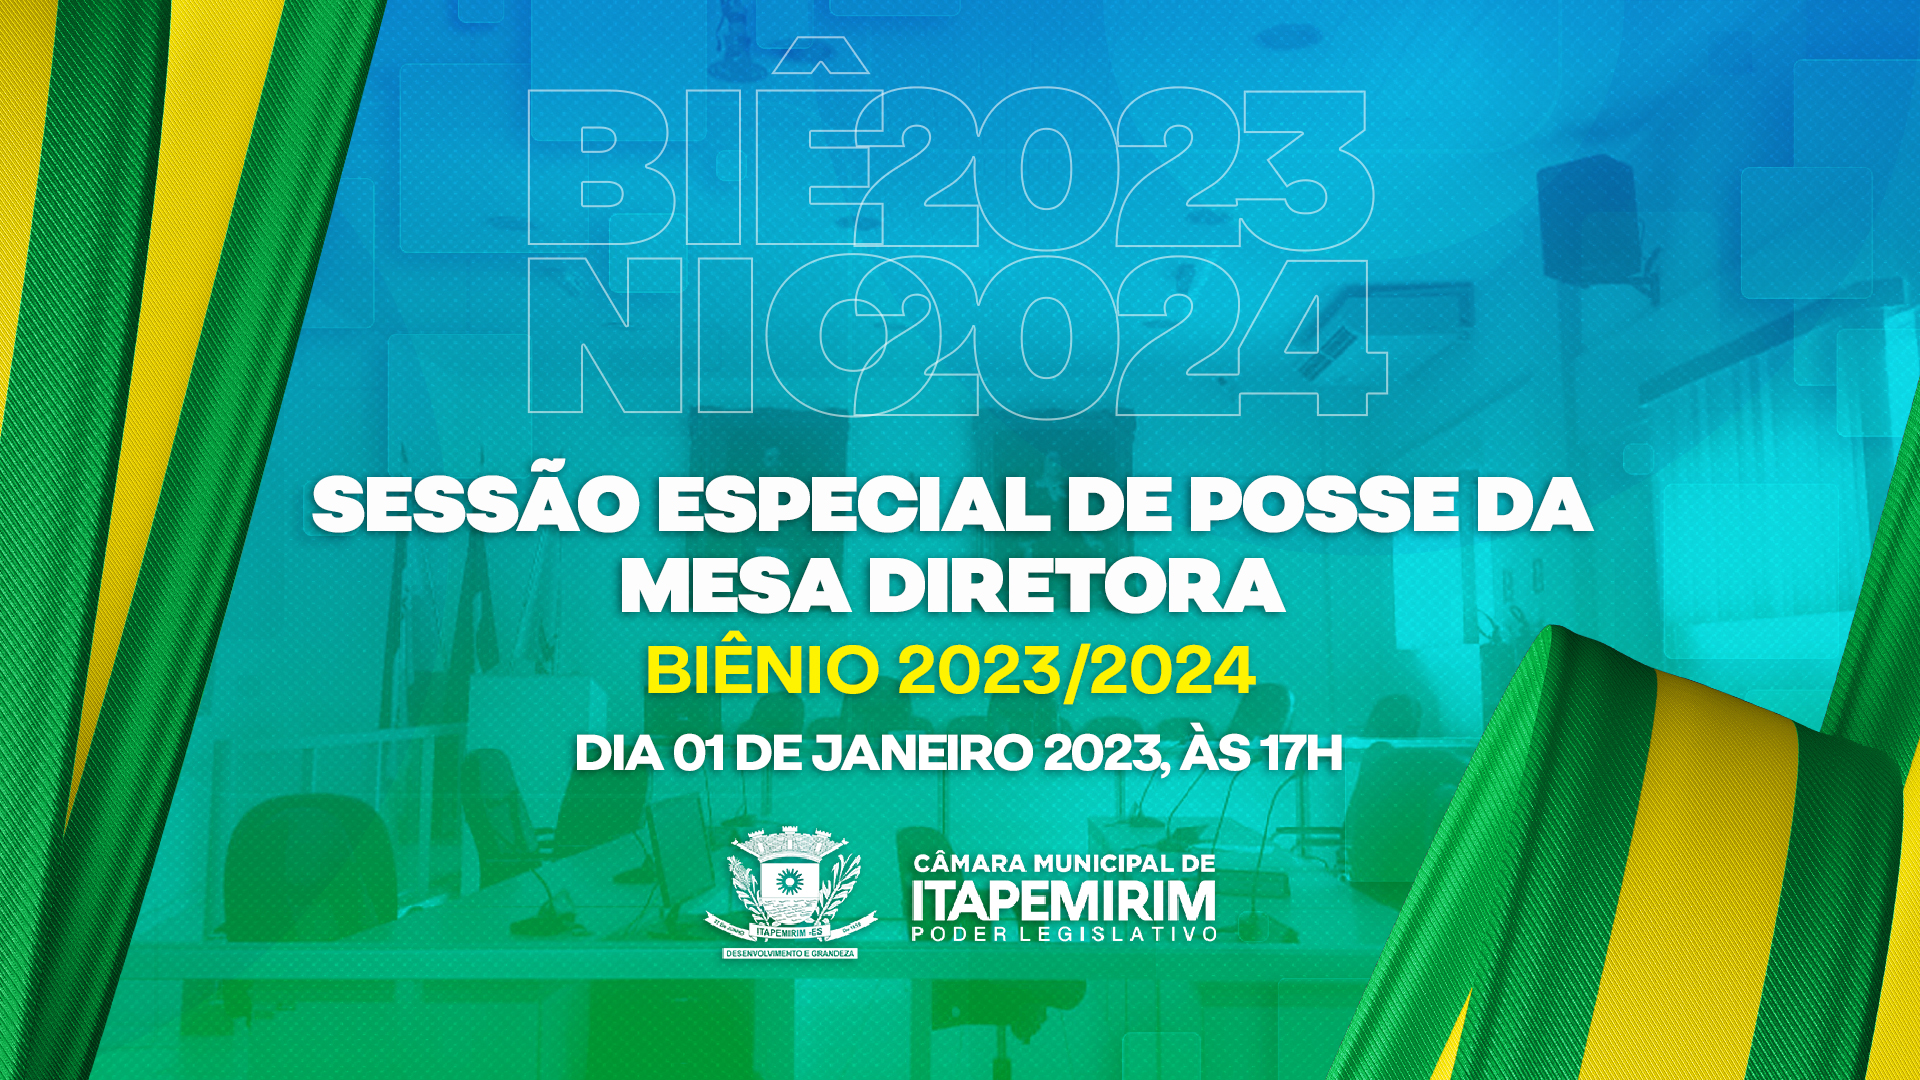 Sessão Especial de posse da nova Mesa Diretora (Biênio 2023/2024) em 01/01/2023